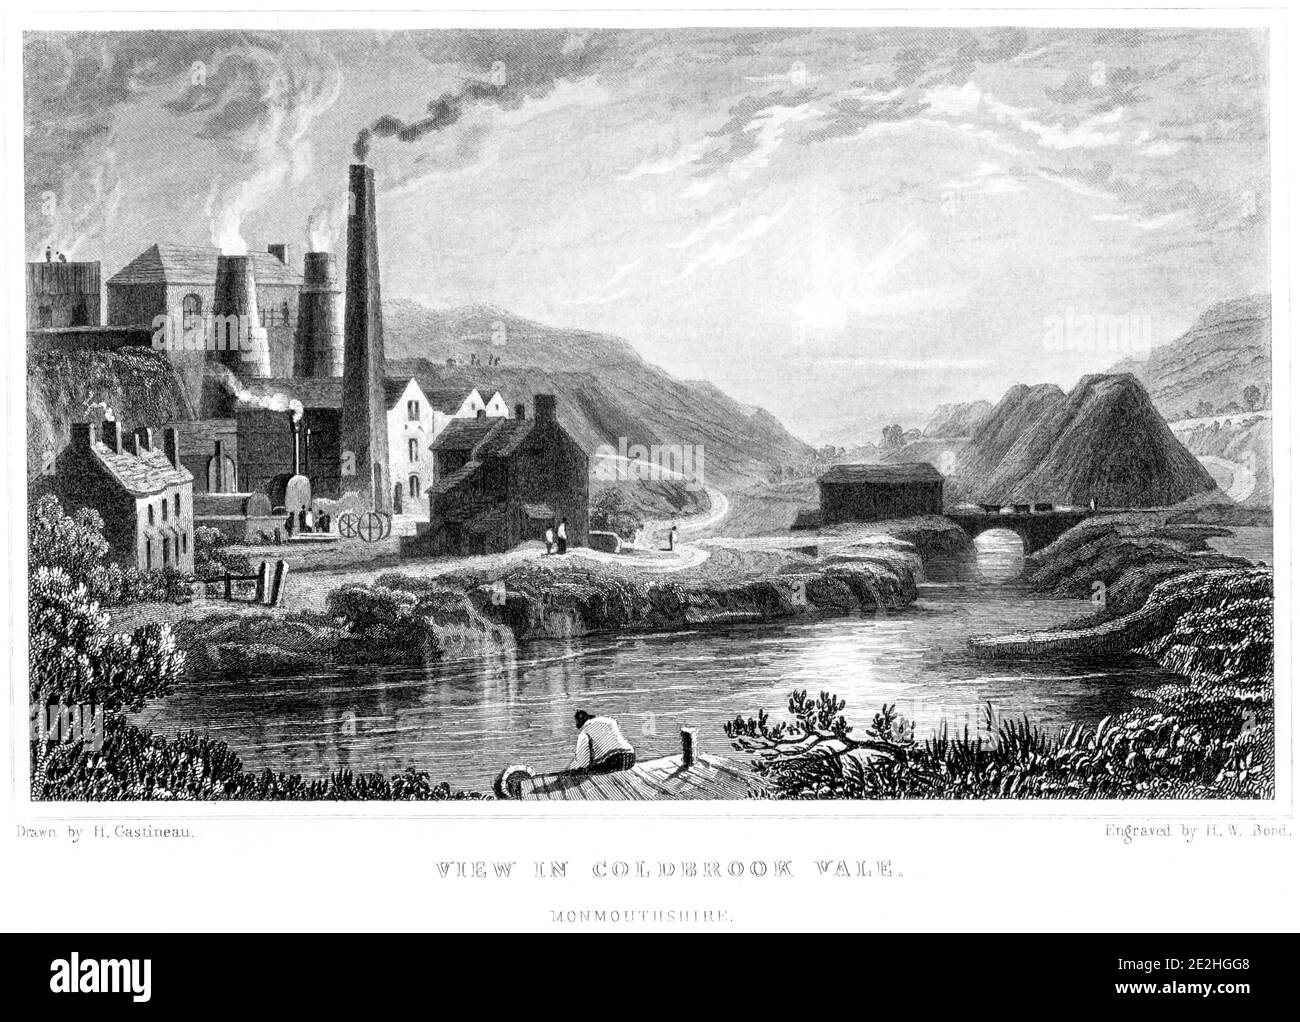 Ein Stich von A View in Coldbrook Vale, Monmouthshire, gescannt in hoher Auflösung von einem Buch veröffentlicht im Jahr 1854. Für urheberrechtlich frei gehalten. Stockfoto